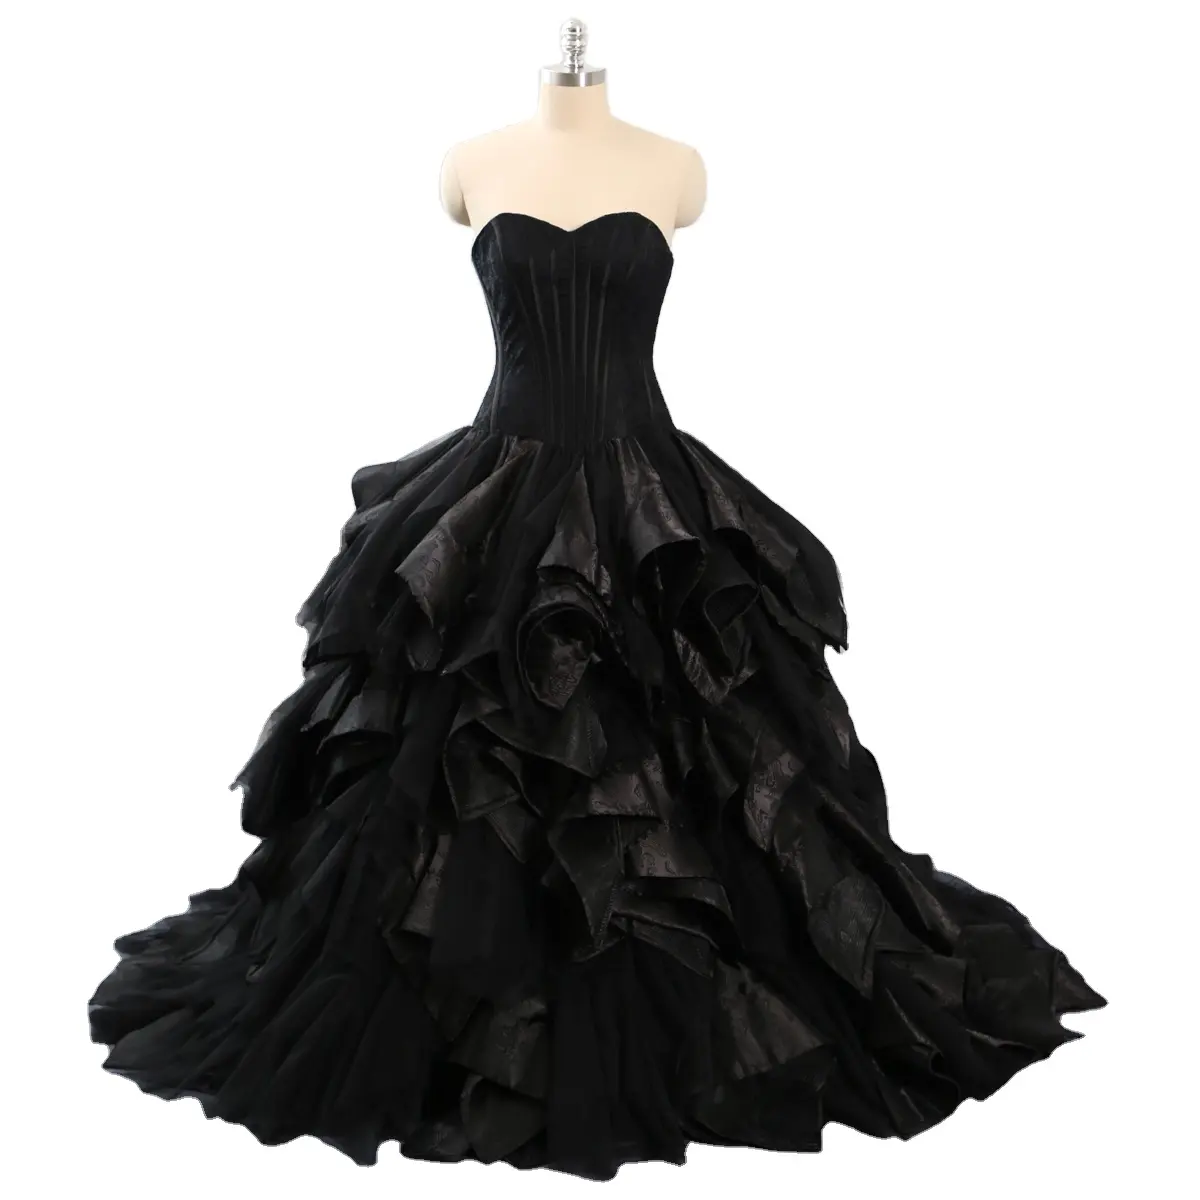 Broderie à volants noirs sur mesure robe de bal grande jupe robe de sirène pour femme